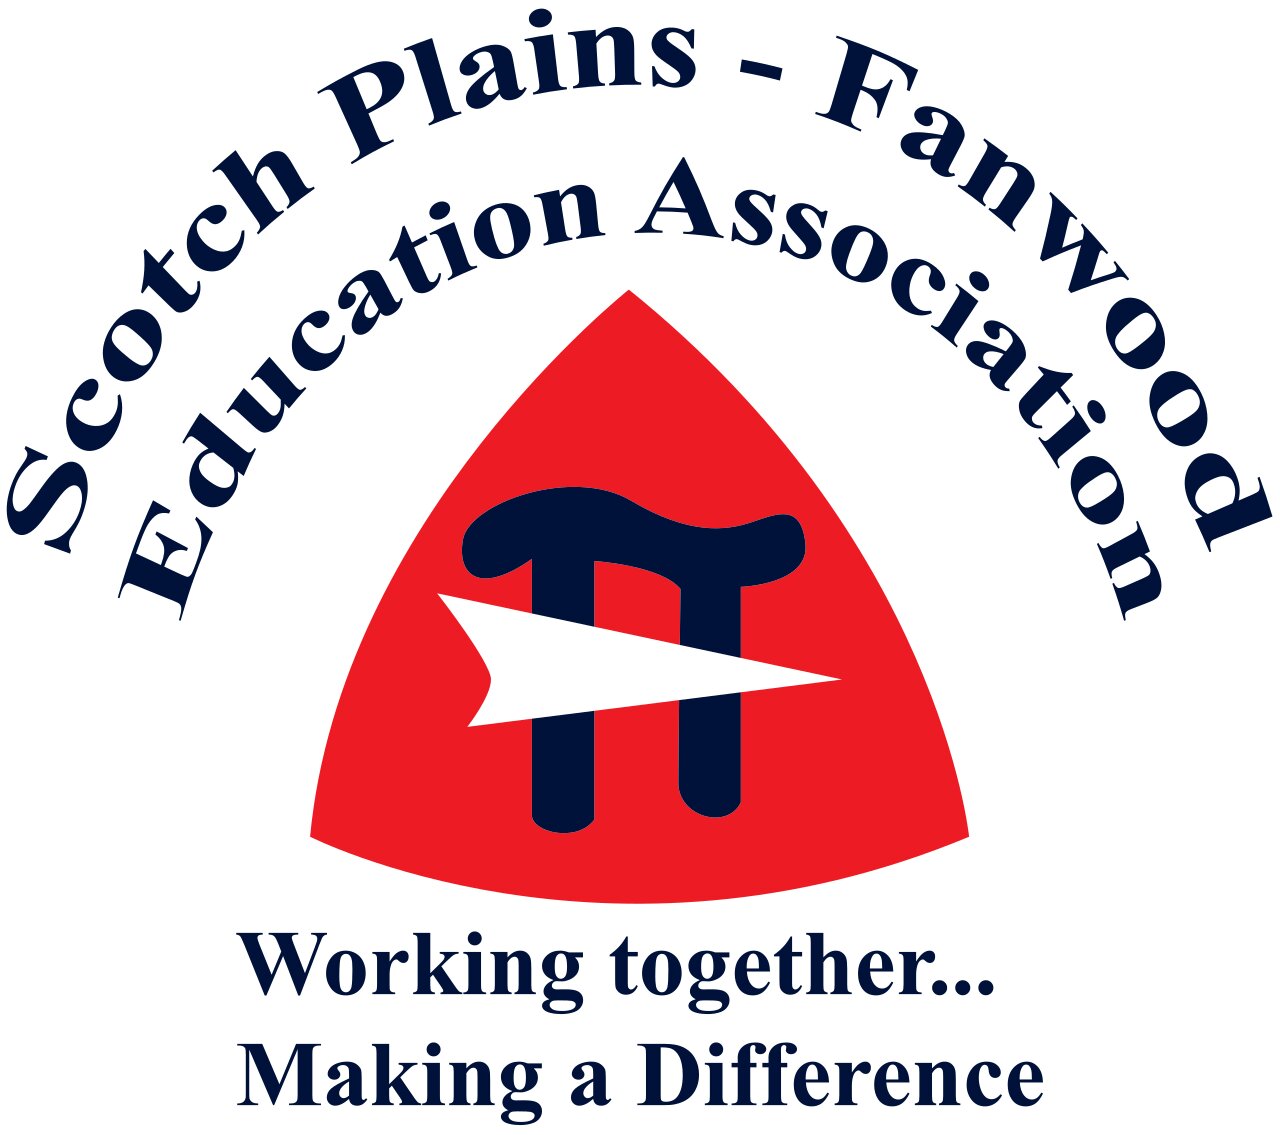 Scotch Plains - Fanwood Education Association